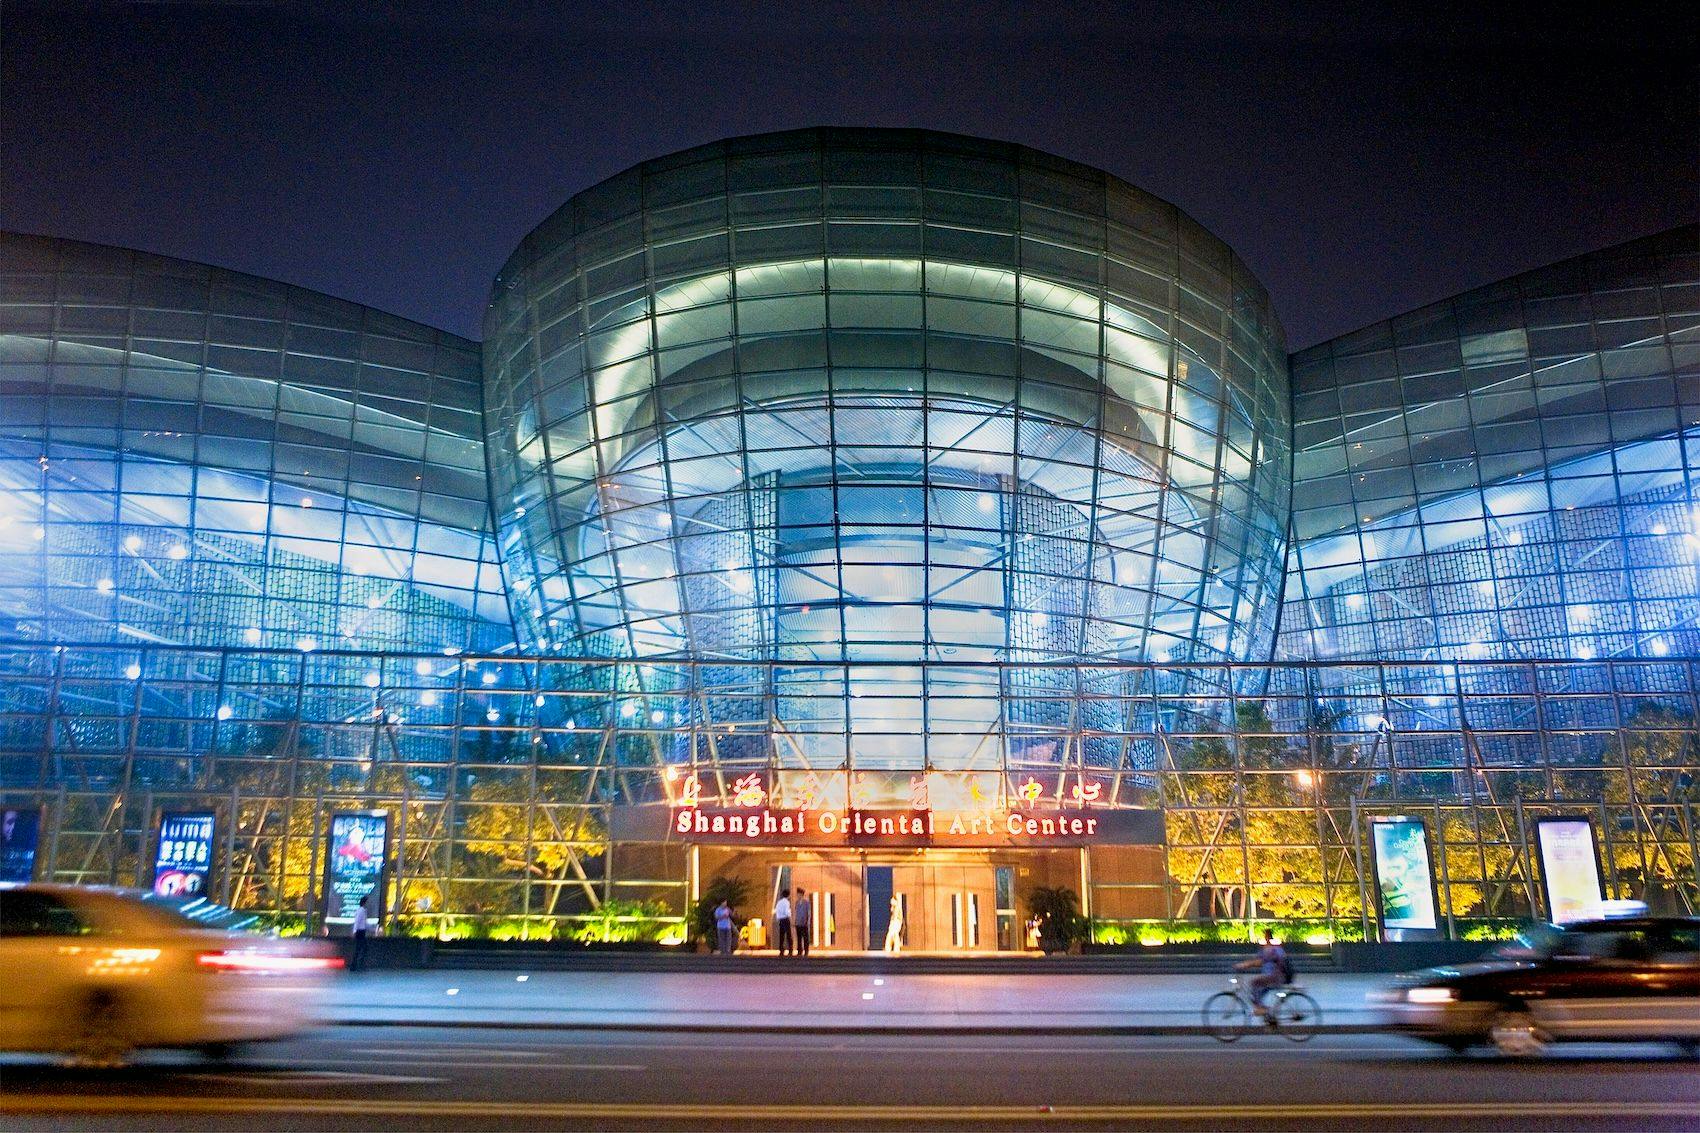 Shanghai Oriental Art Center Zentrum für szenische Künste